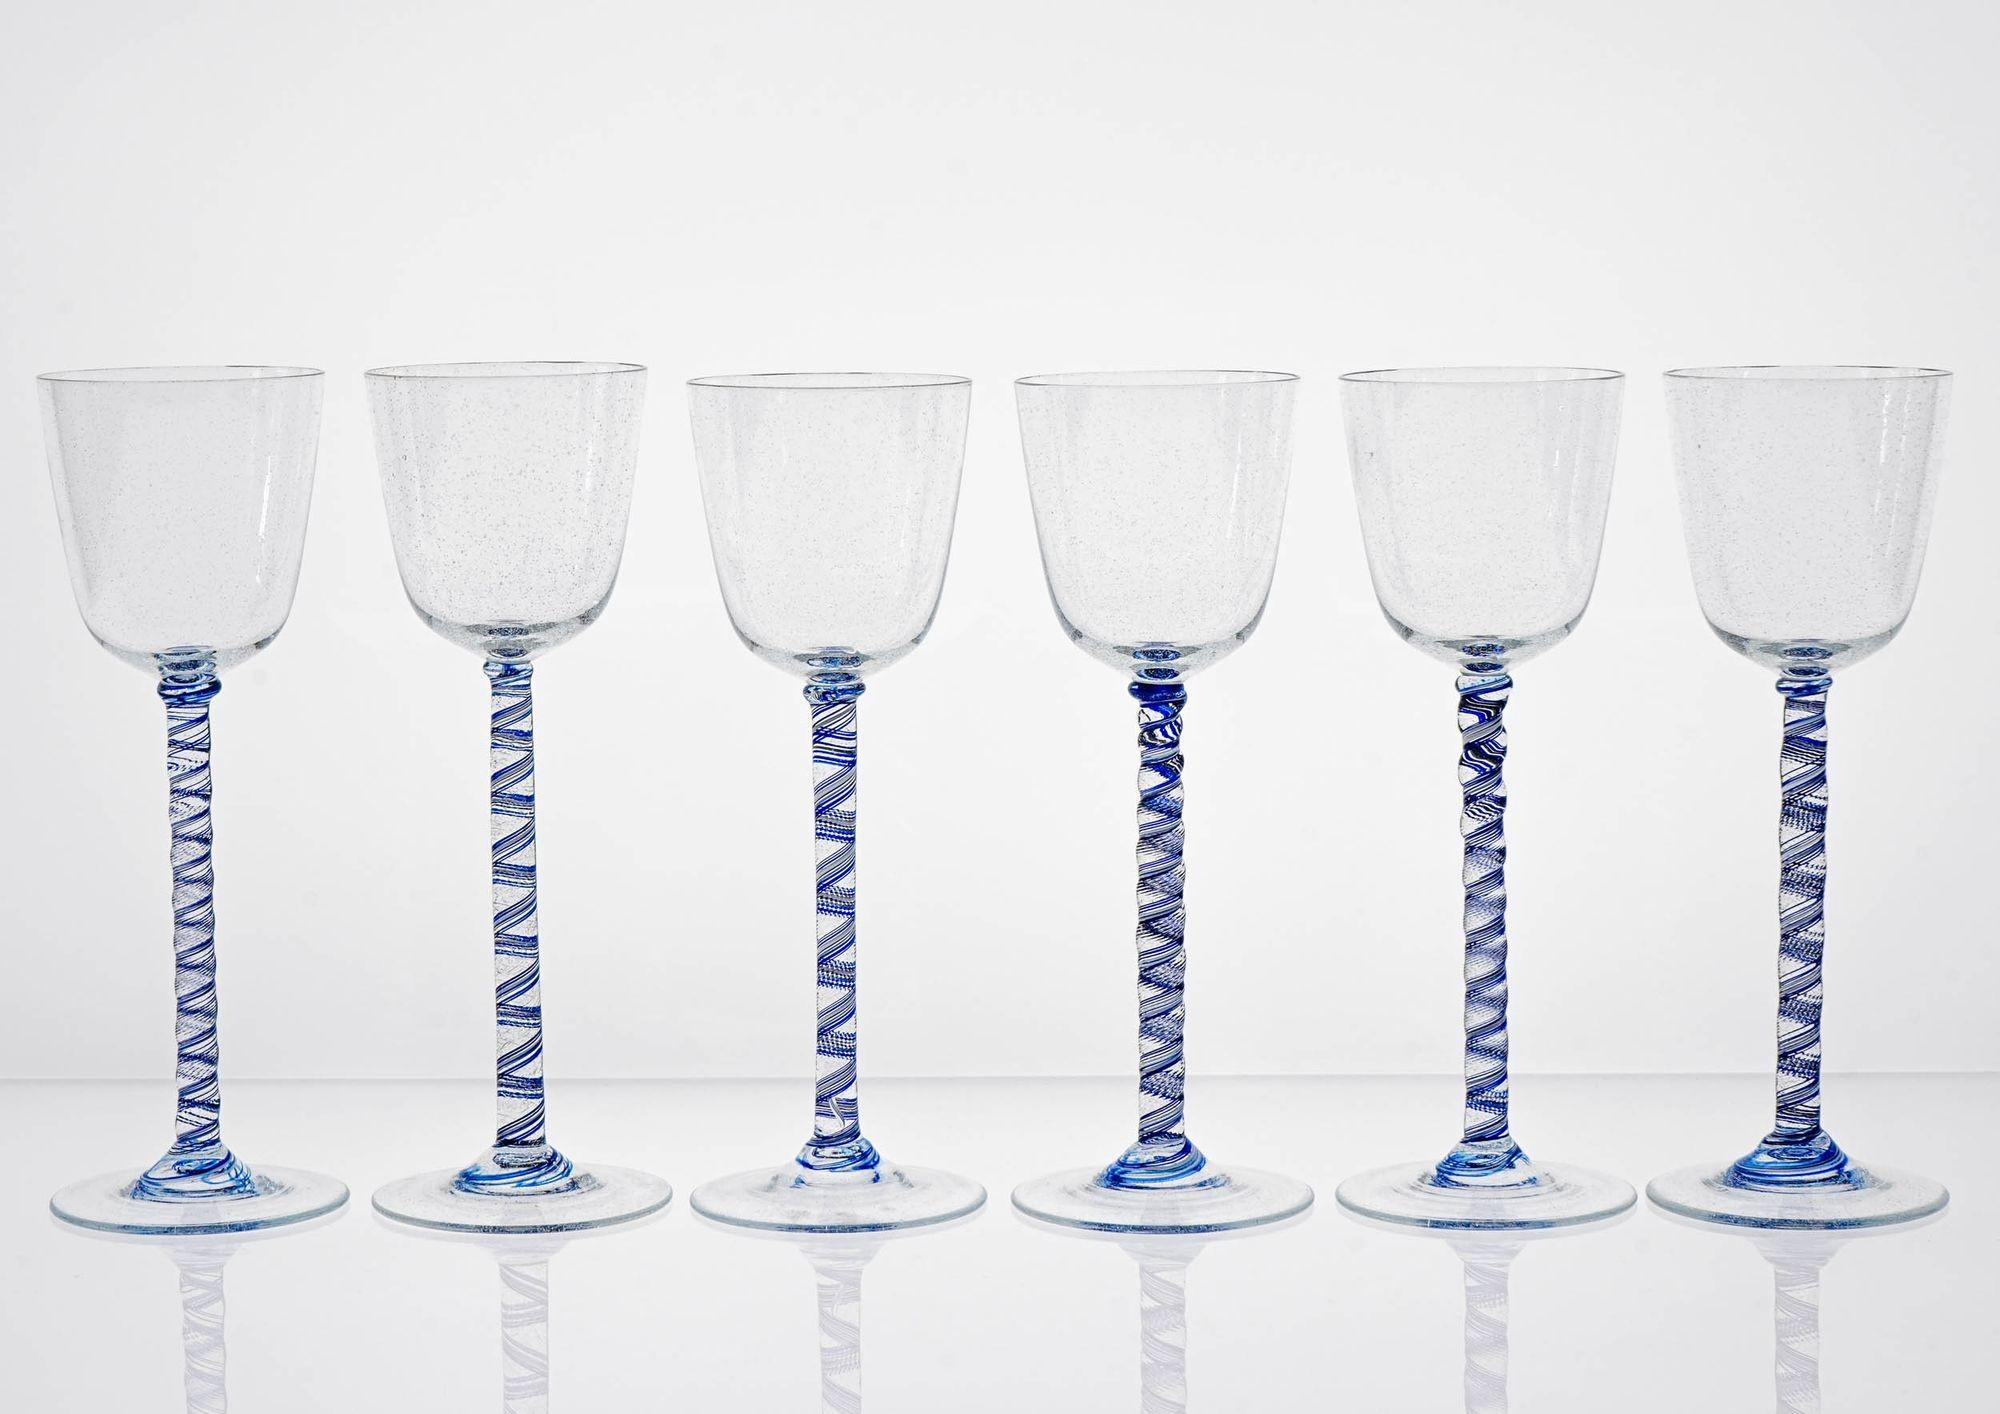 Posséder un ensemble rare et exceptionnel de verres à pied Cenedese
Cet ensemble de verres à pied, qui ne peut être répété, reproduit le verre à pied torsadé classique de l'époque géorgienne du XVIIIe siècle. La tige torsadée est en perle de cobalt.